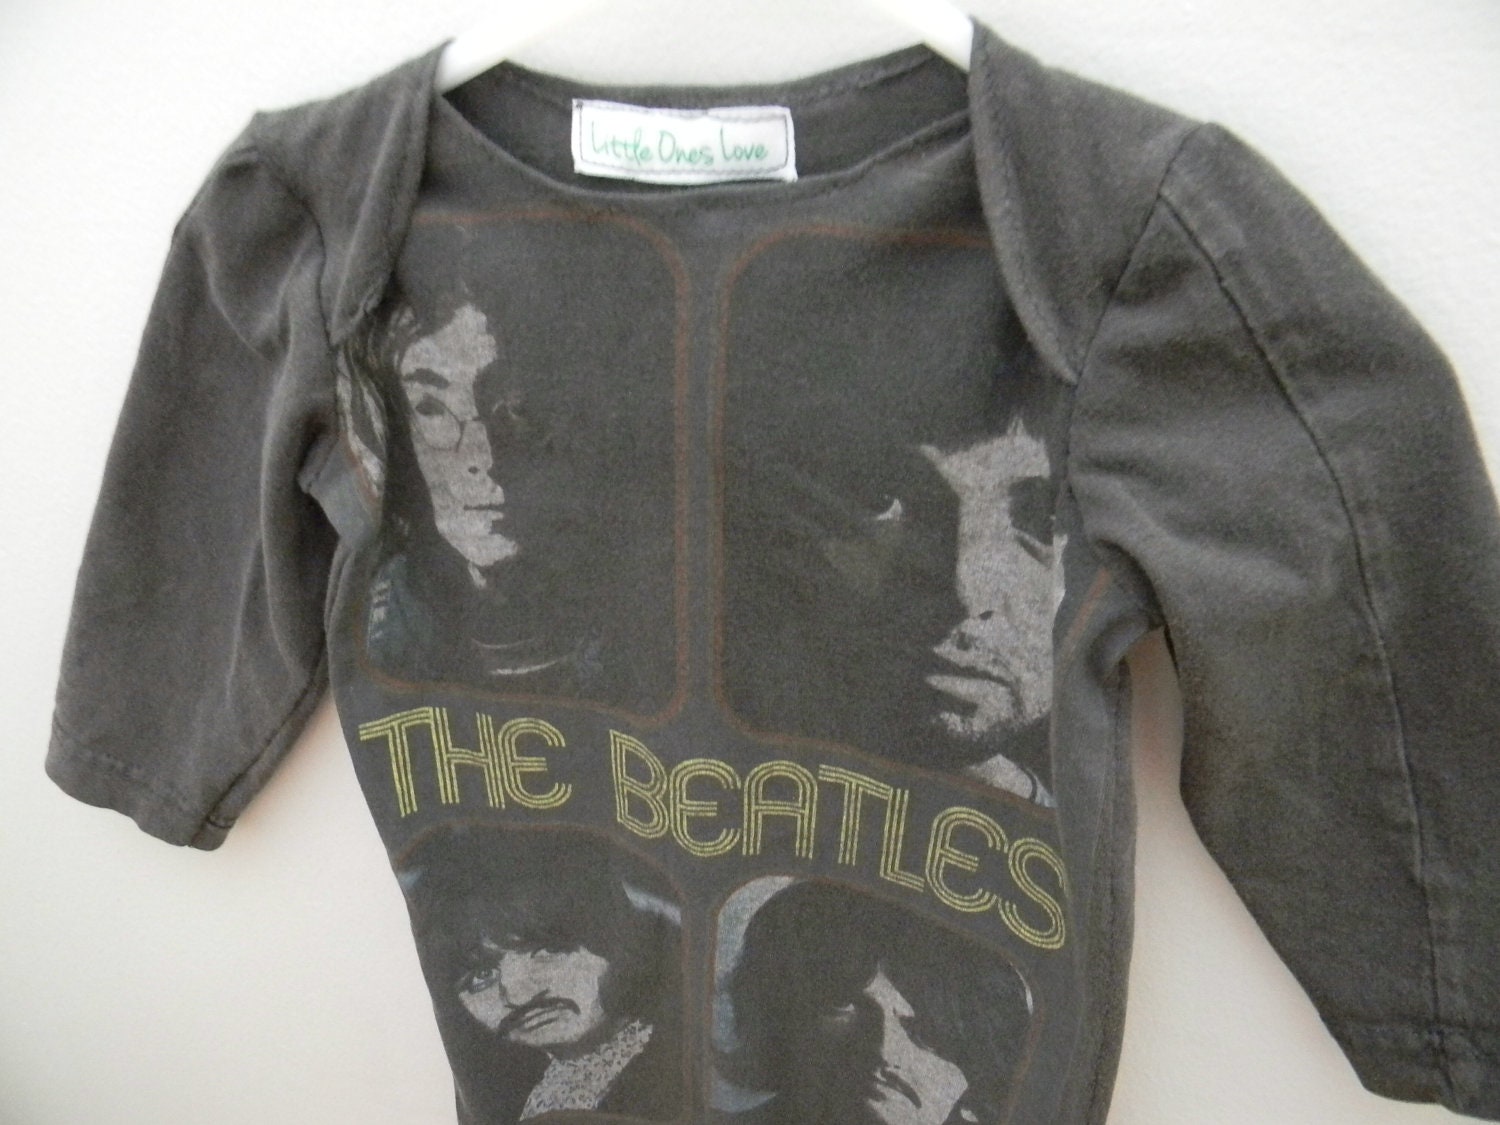 Beatles newborn baby gown - littleoneslove